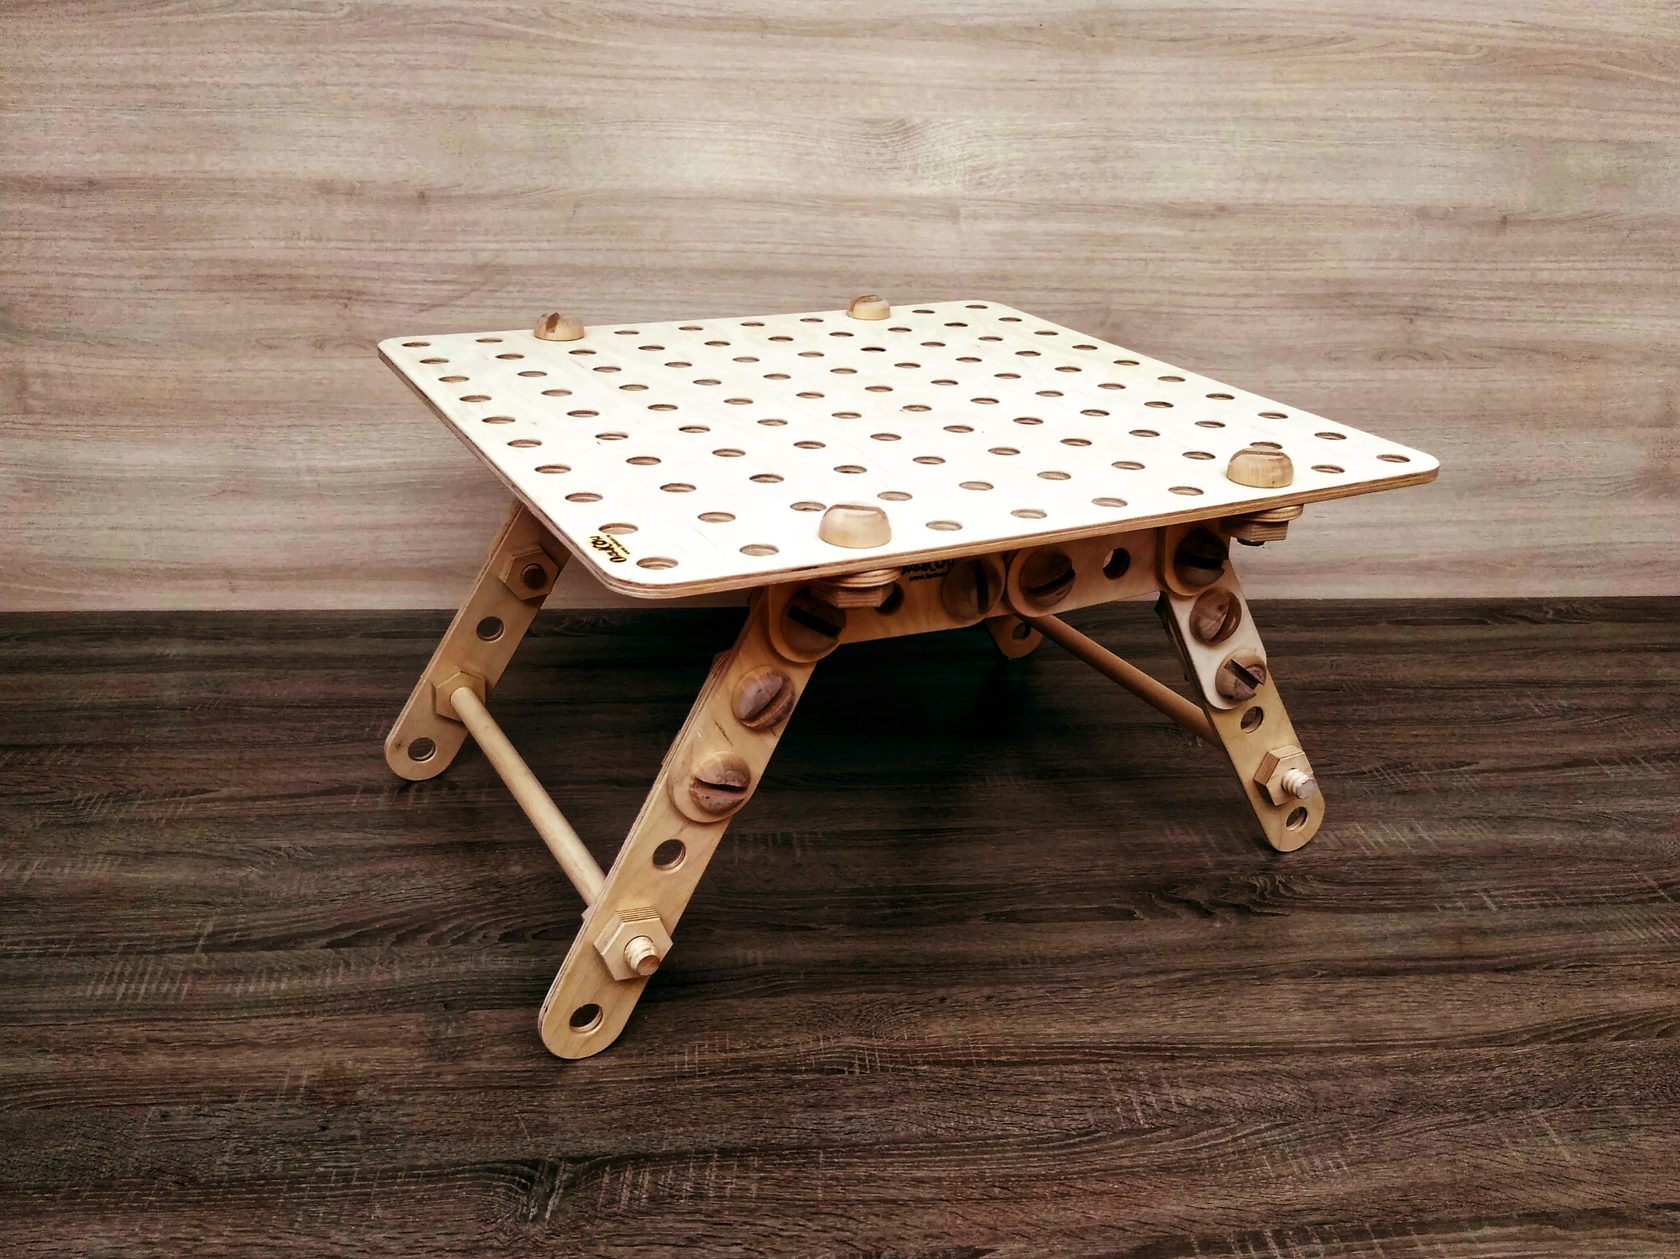 журнальный столик, фанерный конструктор, металлический конструктор, деревянный конструктор